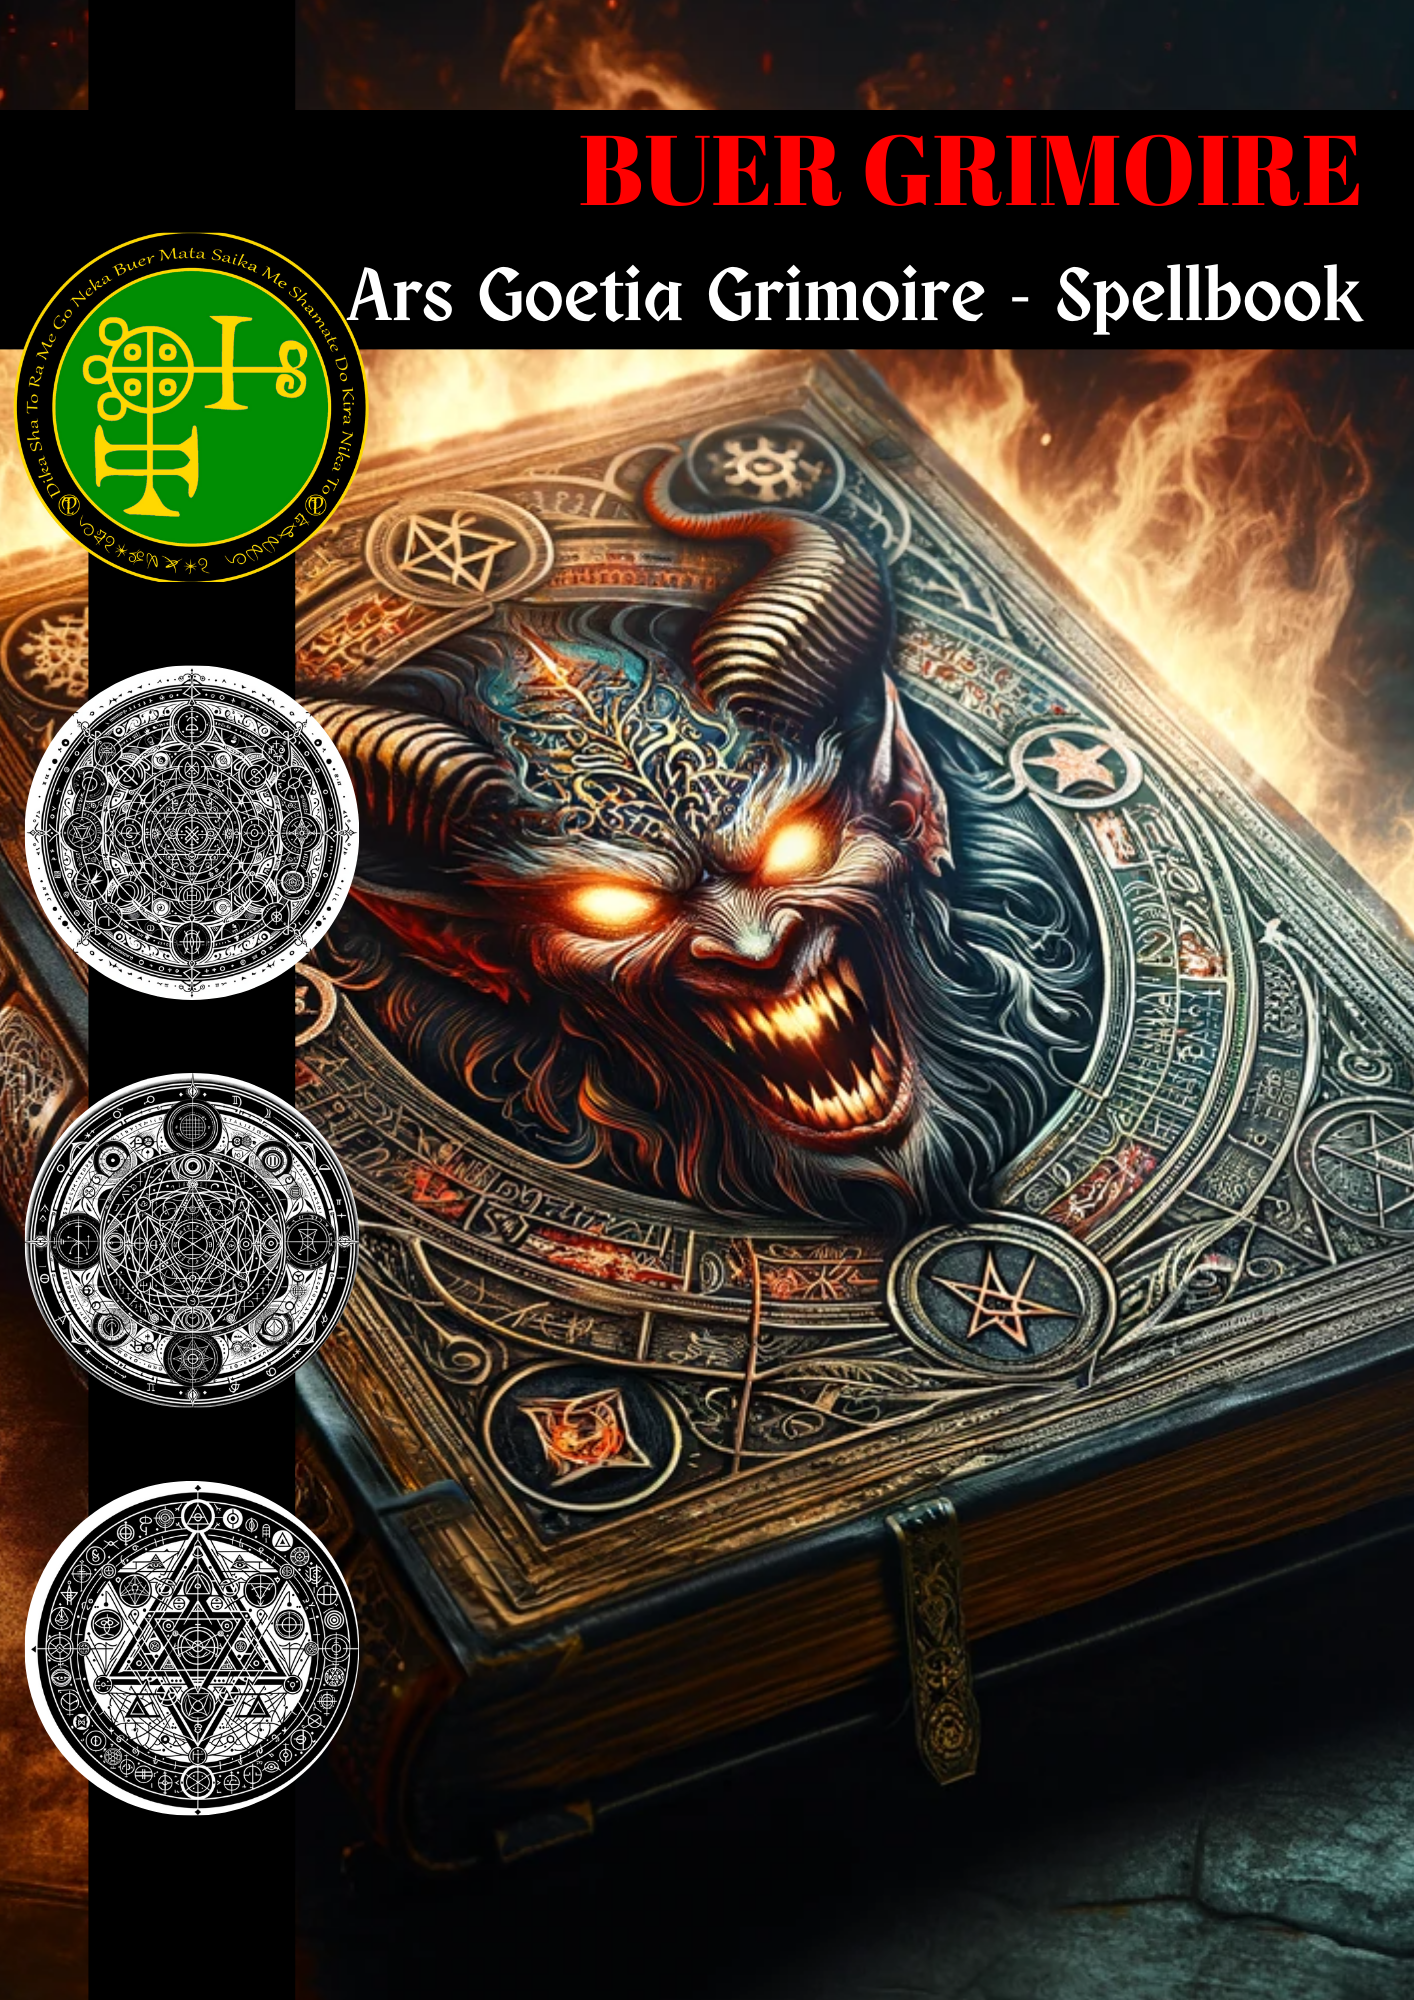 Grimoire of Buer Spells & Litloaelo tsa Pholiso ea 'Mele - Abraxas Amulets ® Magic ♾️ Talismans ♾️ Initiations